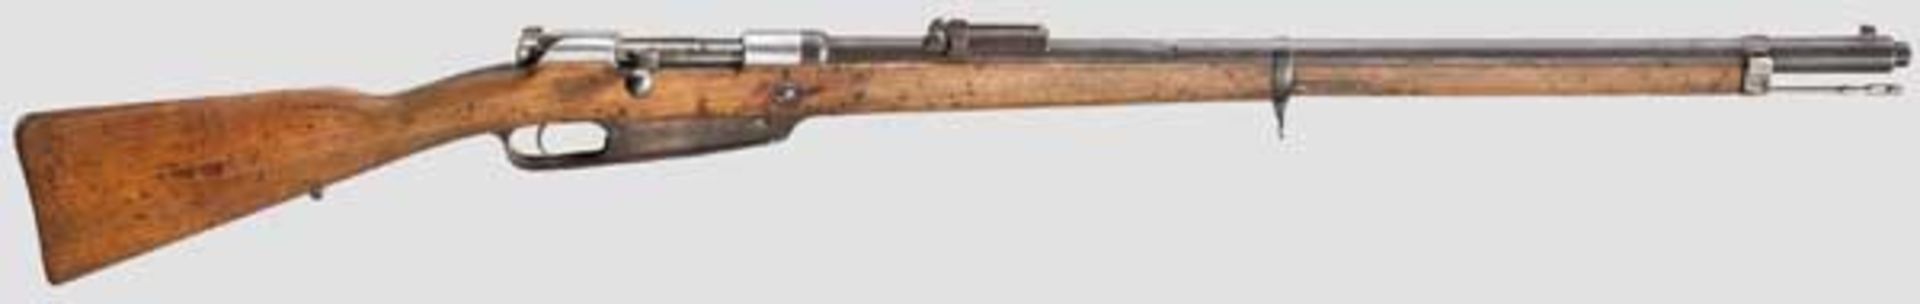 Gewehr 88 n.m., Spandau, 1895 Kal. 8 x 57, Nr. 2238a. Nummerngleich bis auf Schloss und